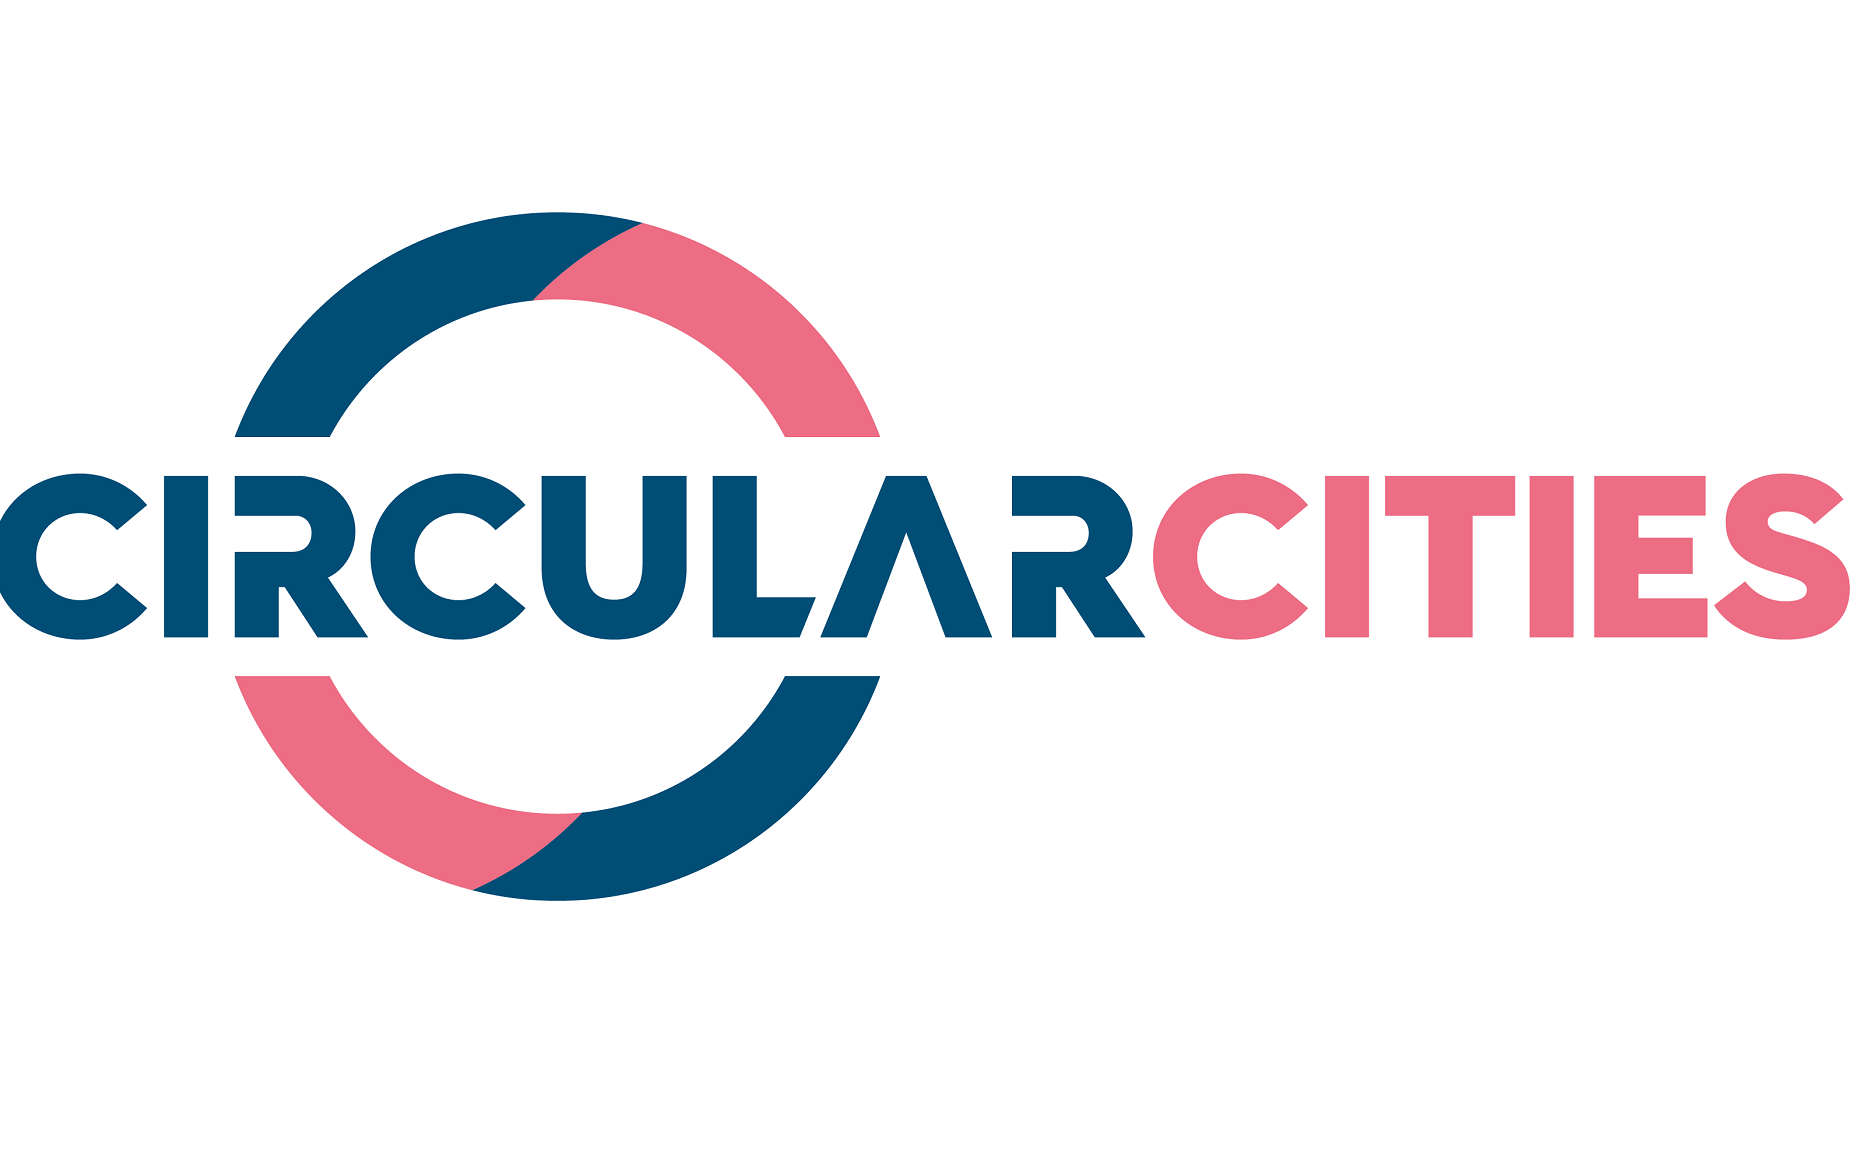 Circular Cities Declaration